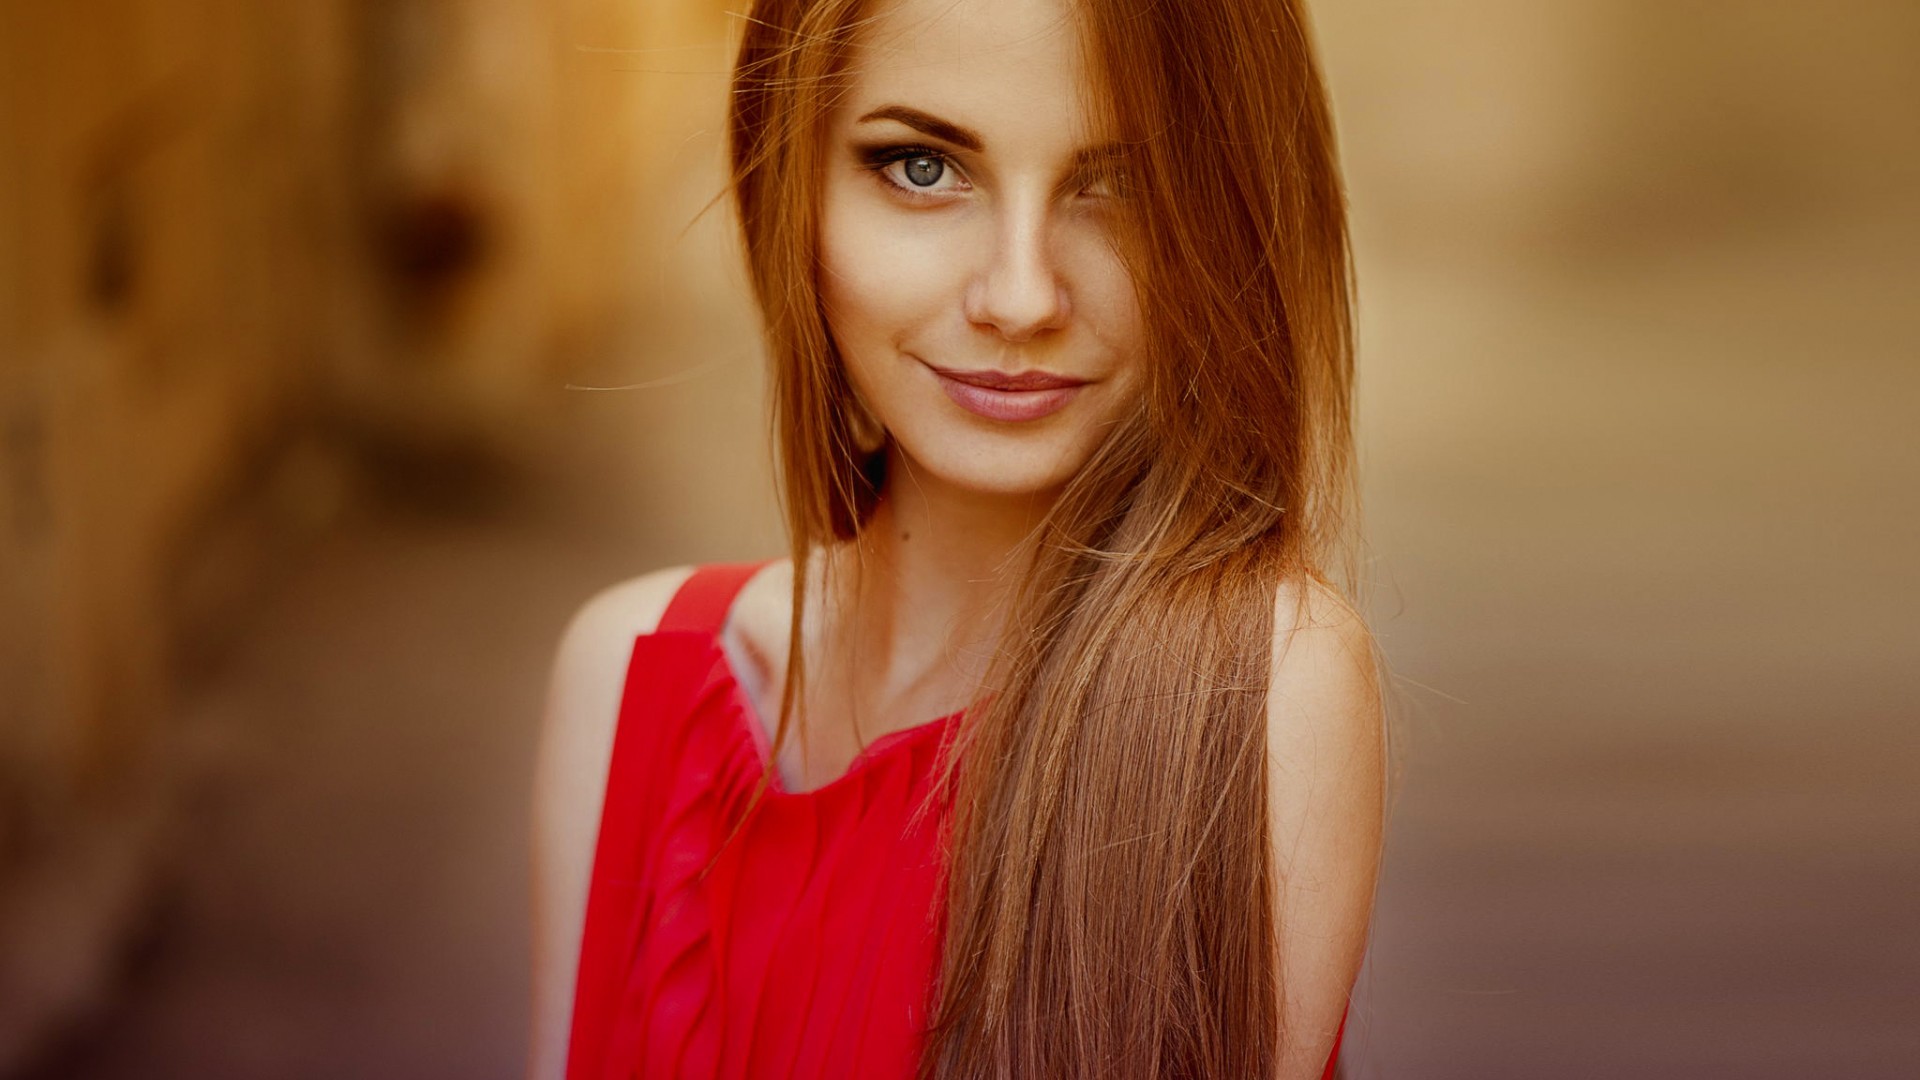 women model long hair smiling brunette red dress women outdoors blue eyes filter airbrushed ann nevreva Wallpaper